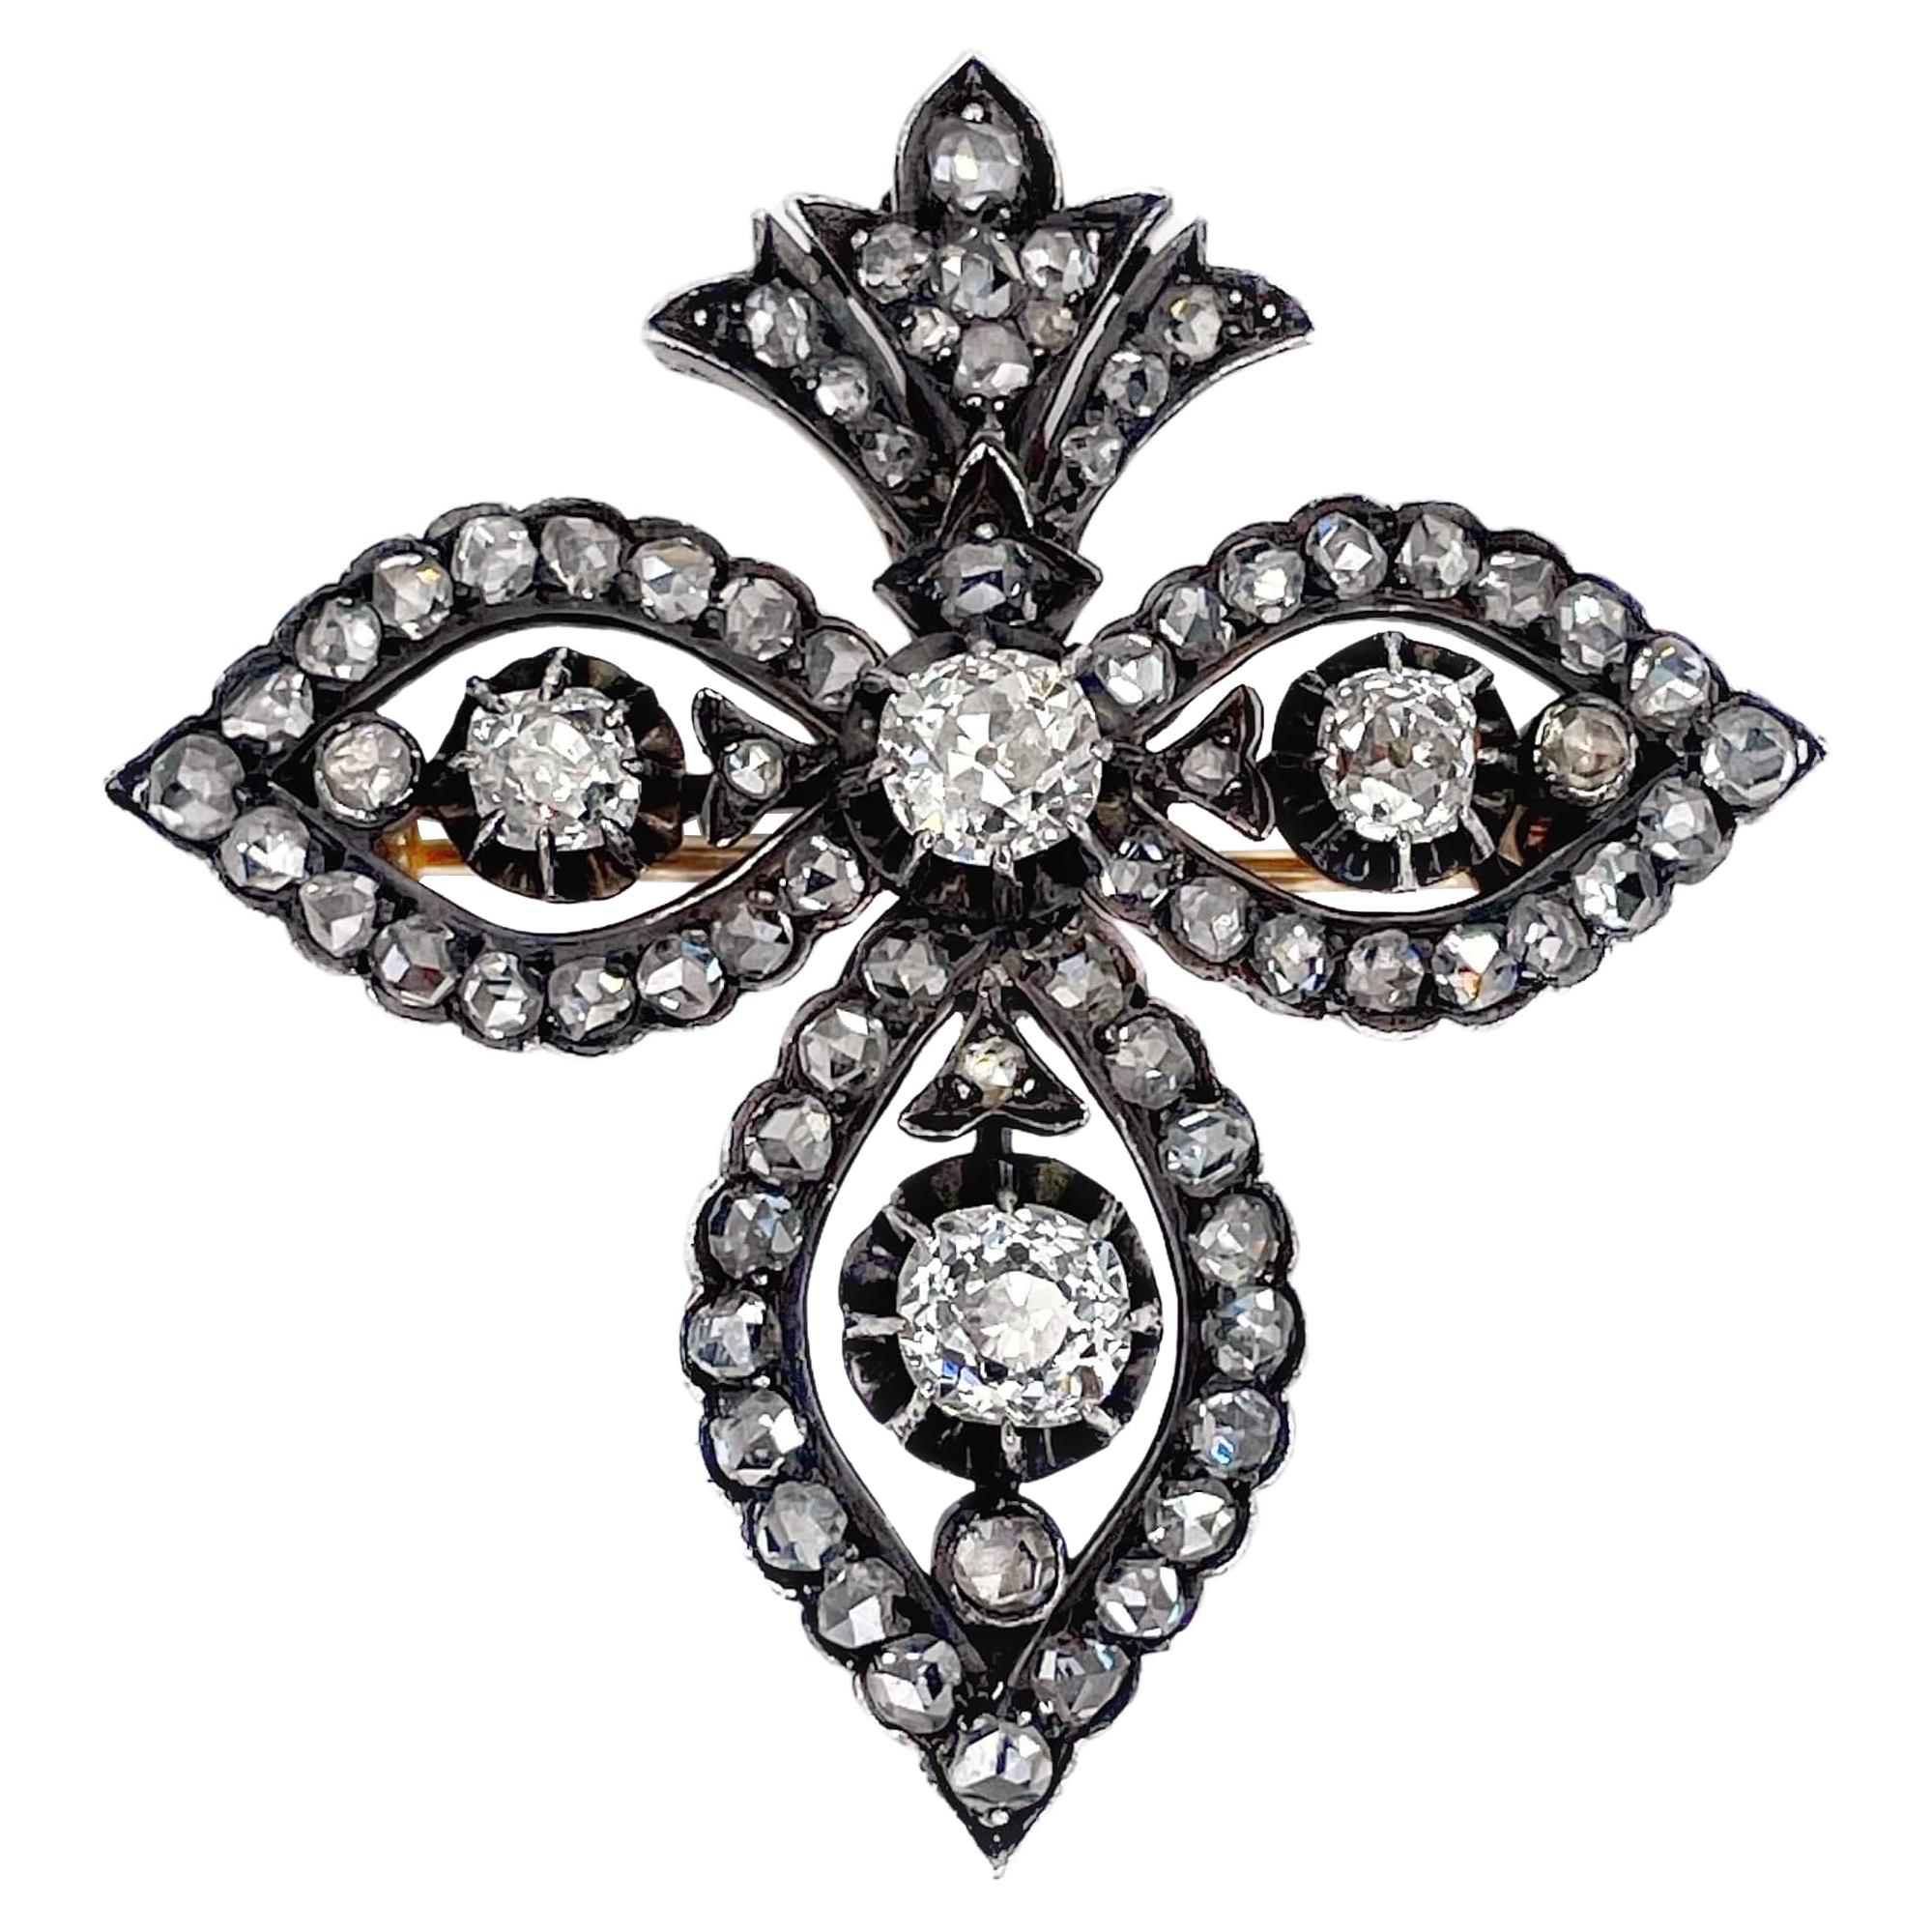 Antique 14K Gold “Fleur-de-lis” Diamond Brooch Pendant XIX Century